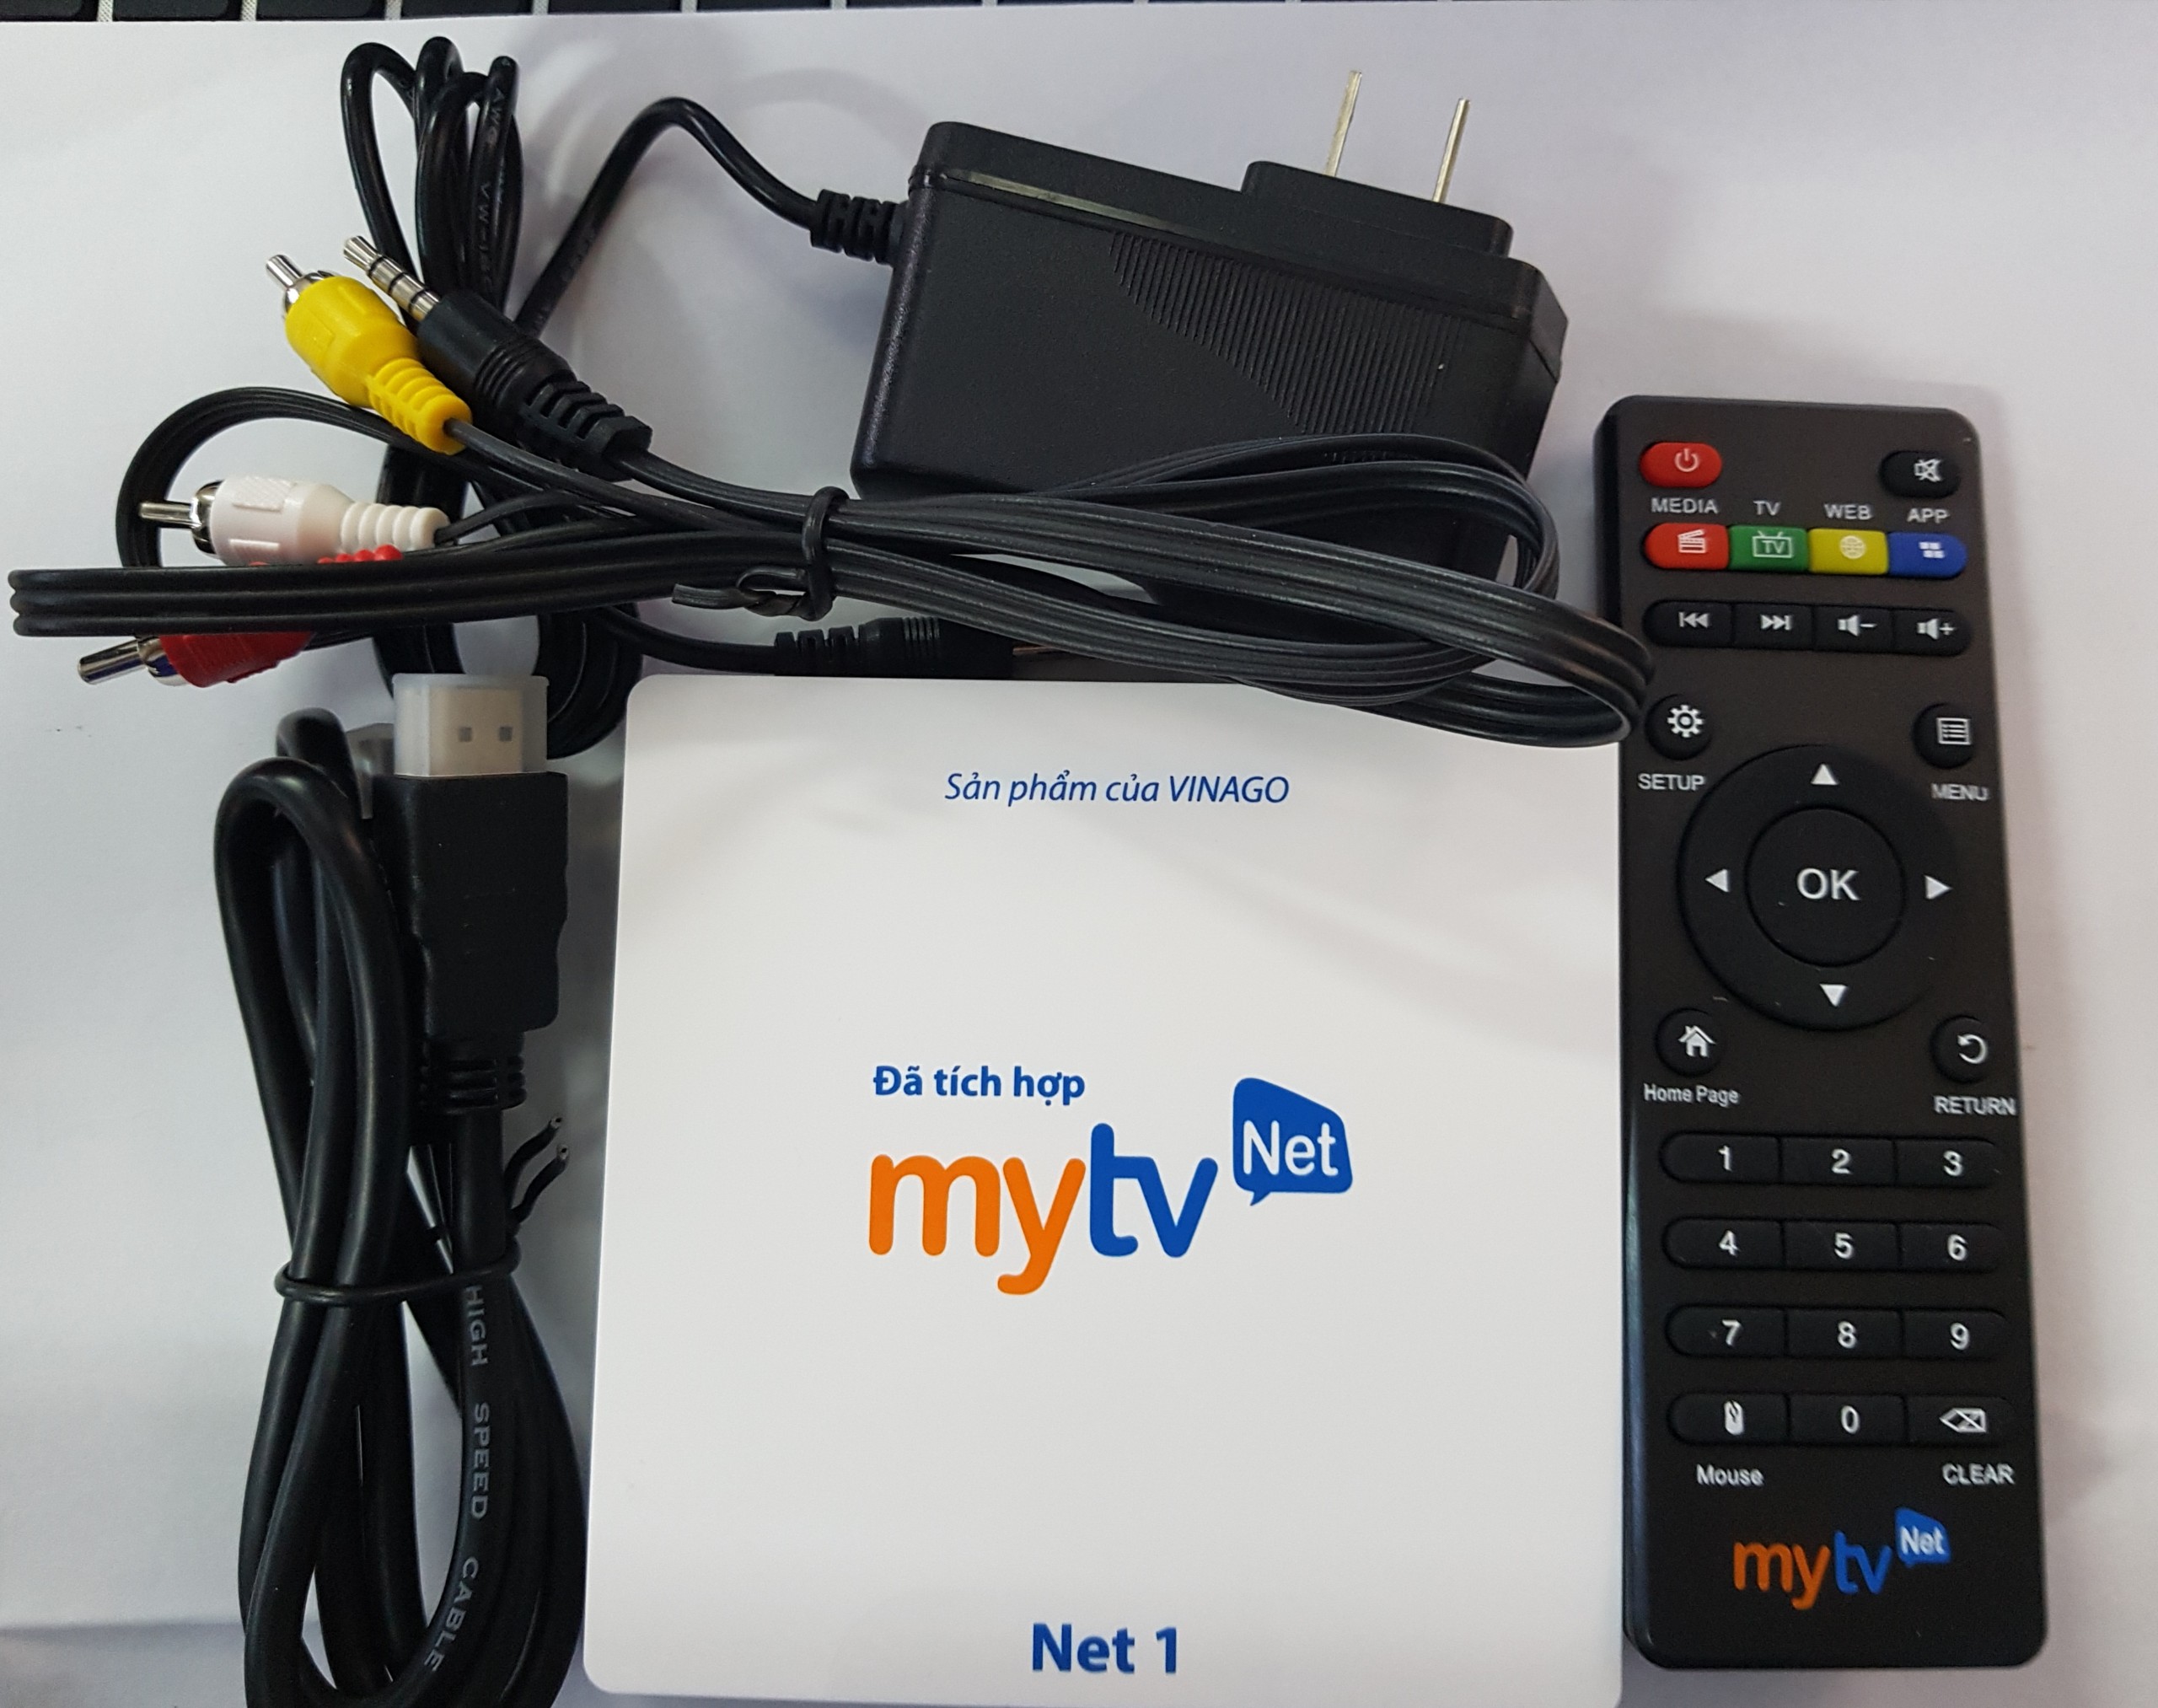 Android MyTV Net RAM 2G-2020 Tặng  HDplay, Android 7.1.2  điều khiển Giọng nói KM680V- Hàng chính hãng